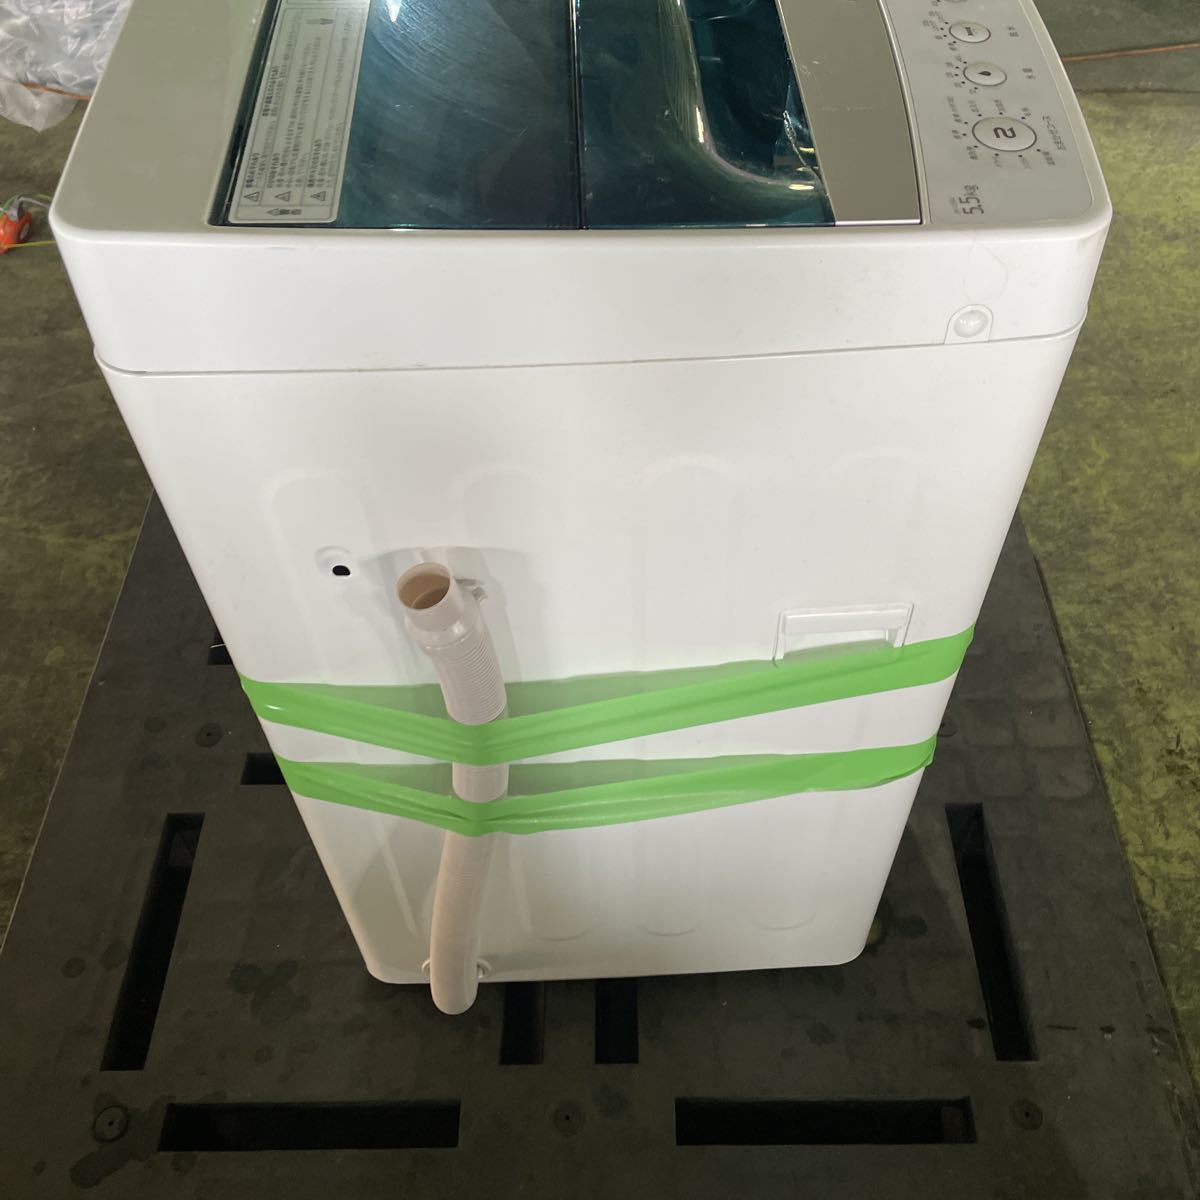 K0519-9 ◇Haier ハイアール 全自動電気洗濯機 JW-C55A ホワイト 5.5kg